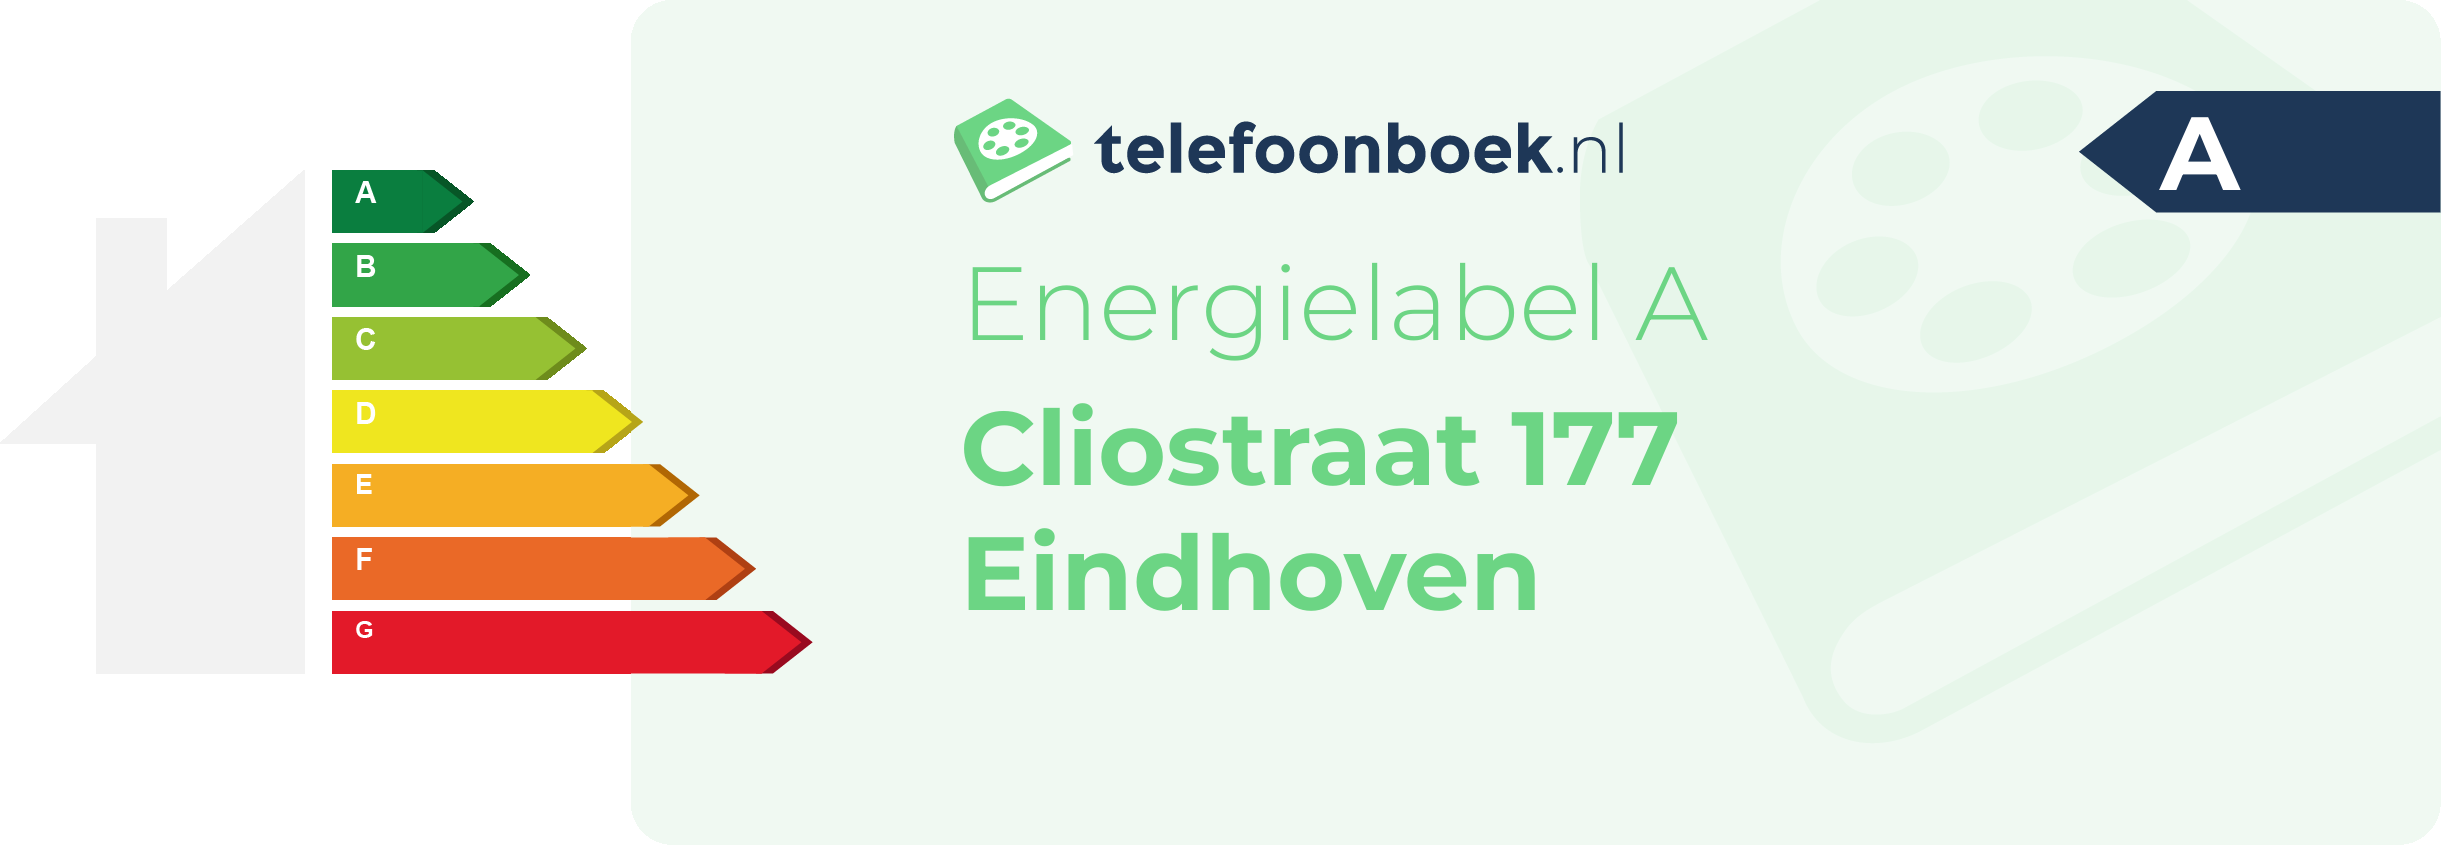 Energielabel Cliostraat 177 Eindhoven